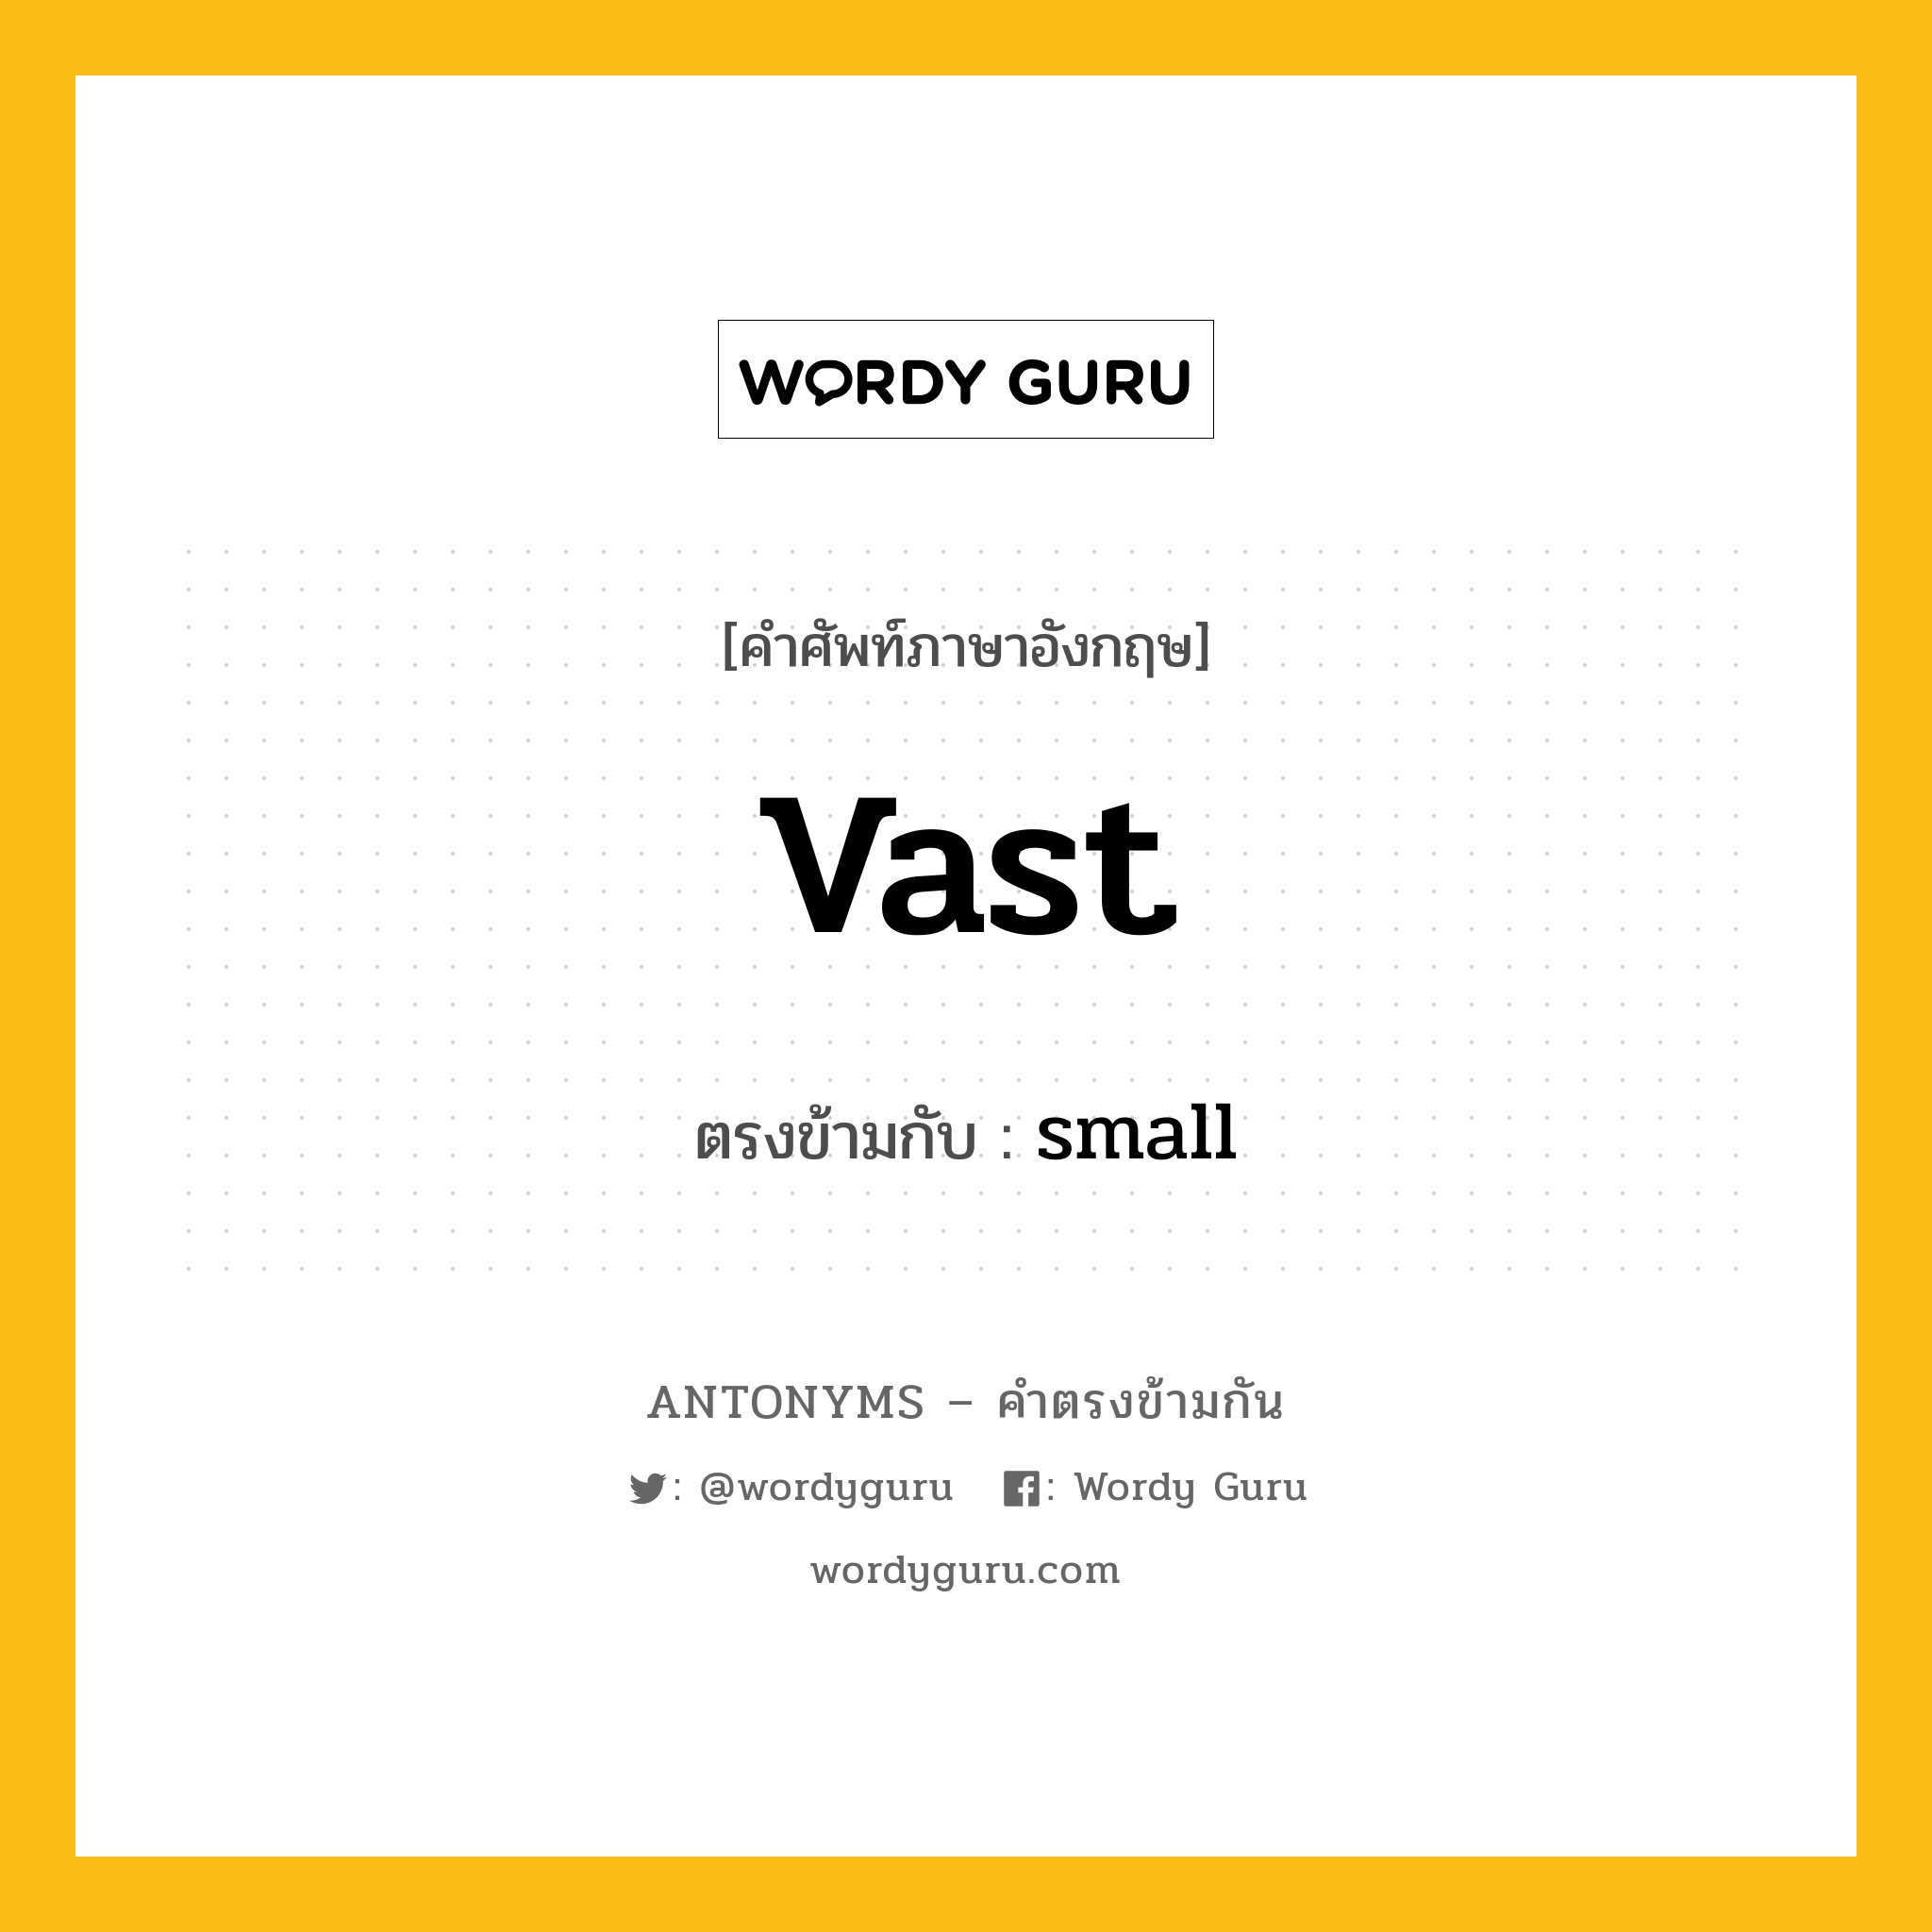 vast เป็นคำตรงข้ามกับคำไหนบ้าง?, คำศัพท์ภาษาอังกฤษ vast ตรงข้ามกับ small หมวด small